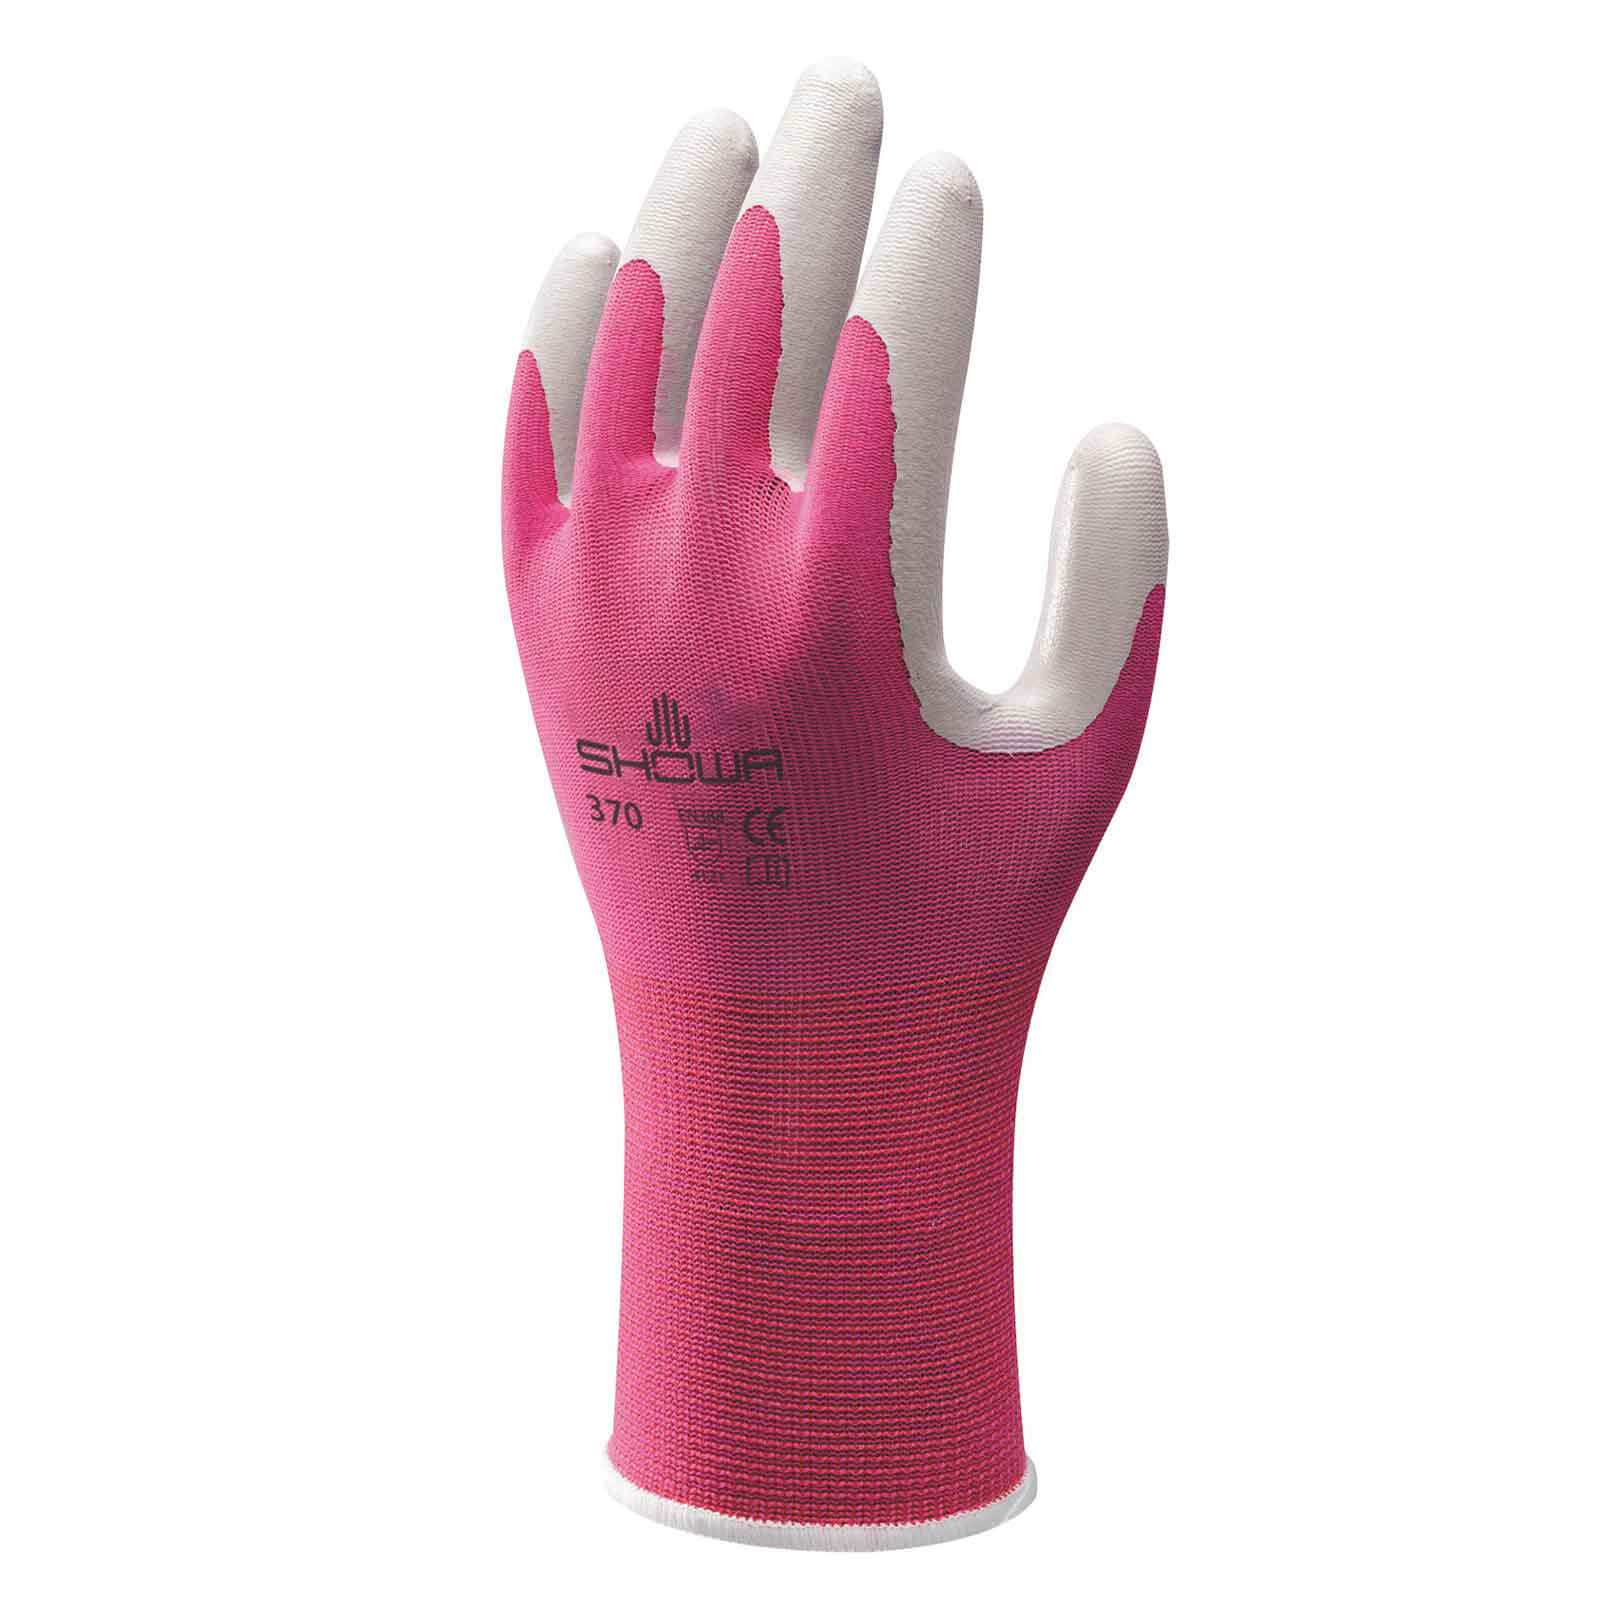 Image of Kew Gardens Multi Purpose Nitrile Coated Gardening Gloves Pink S